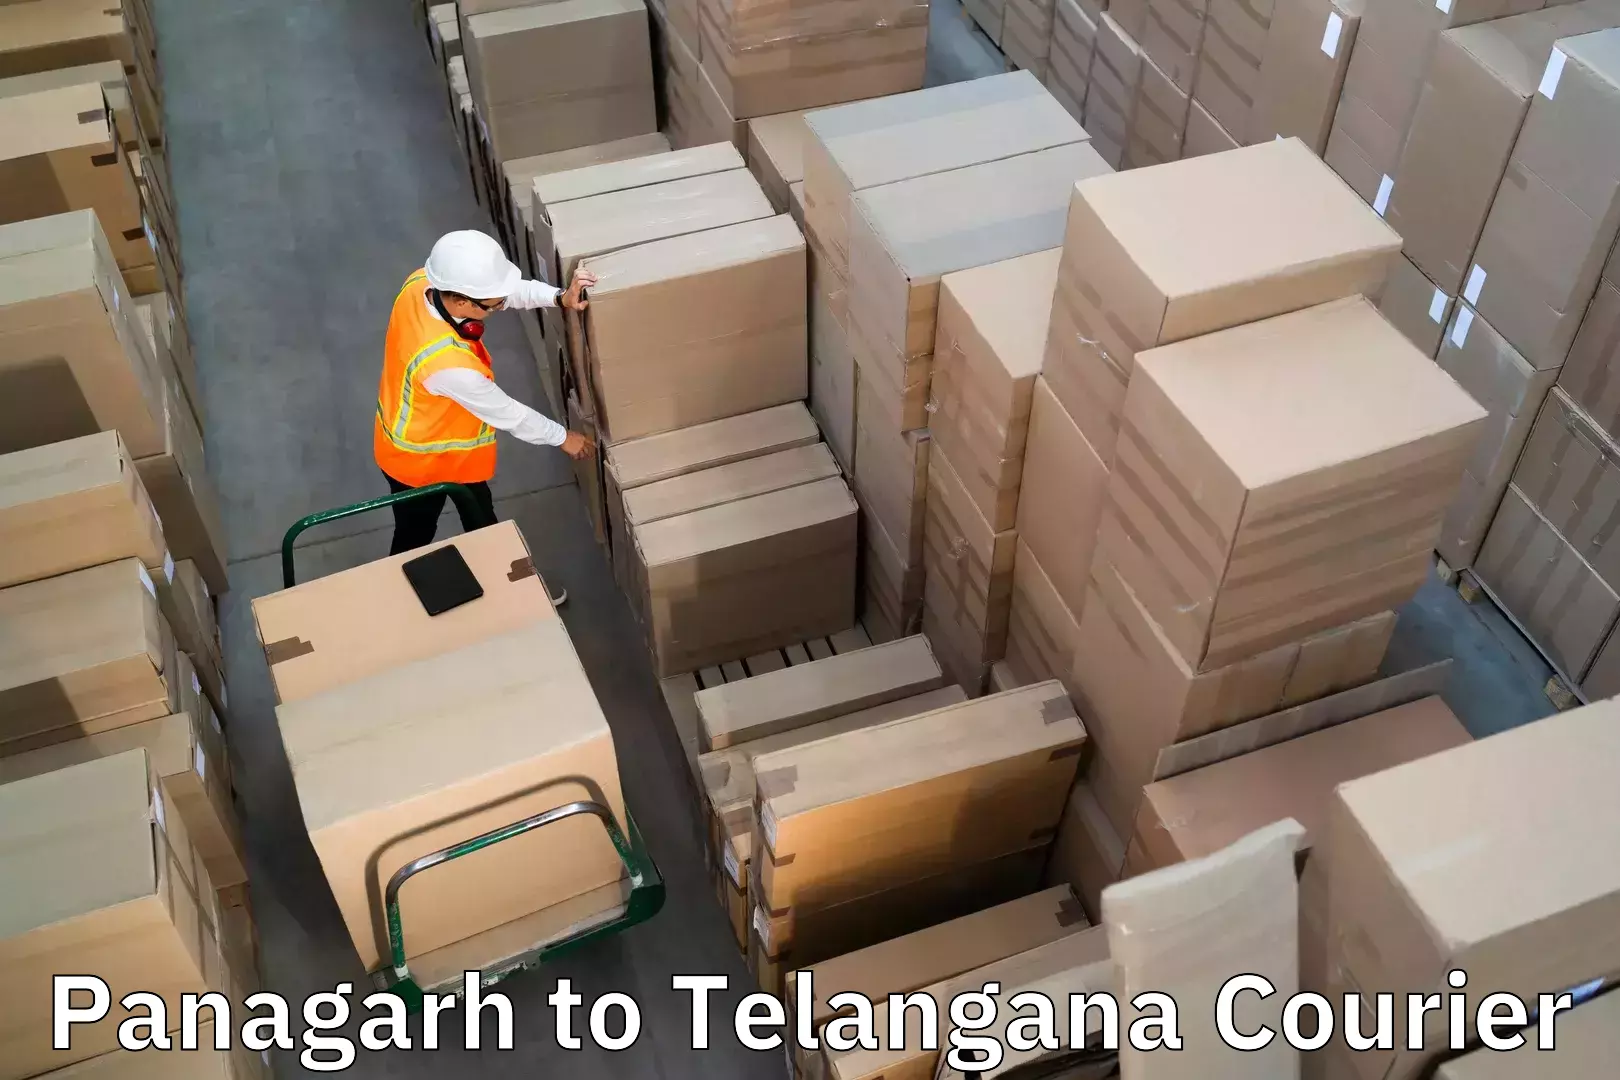 Quick luggage shipment Panagarh to Jogulamba Gadwal